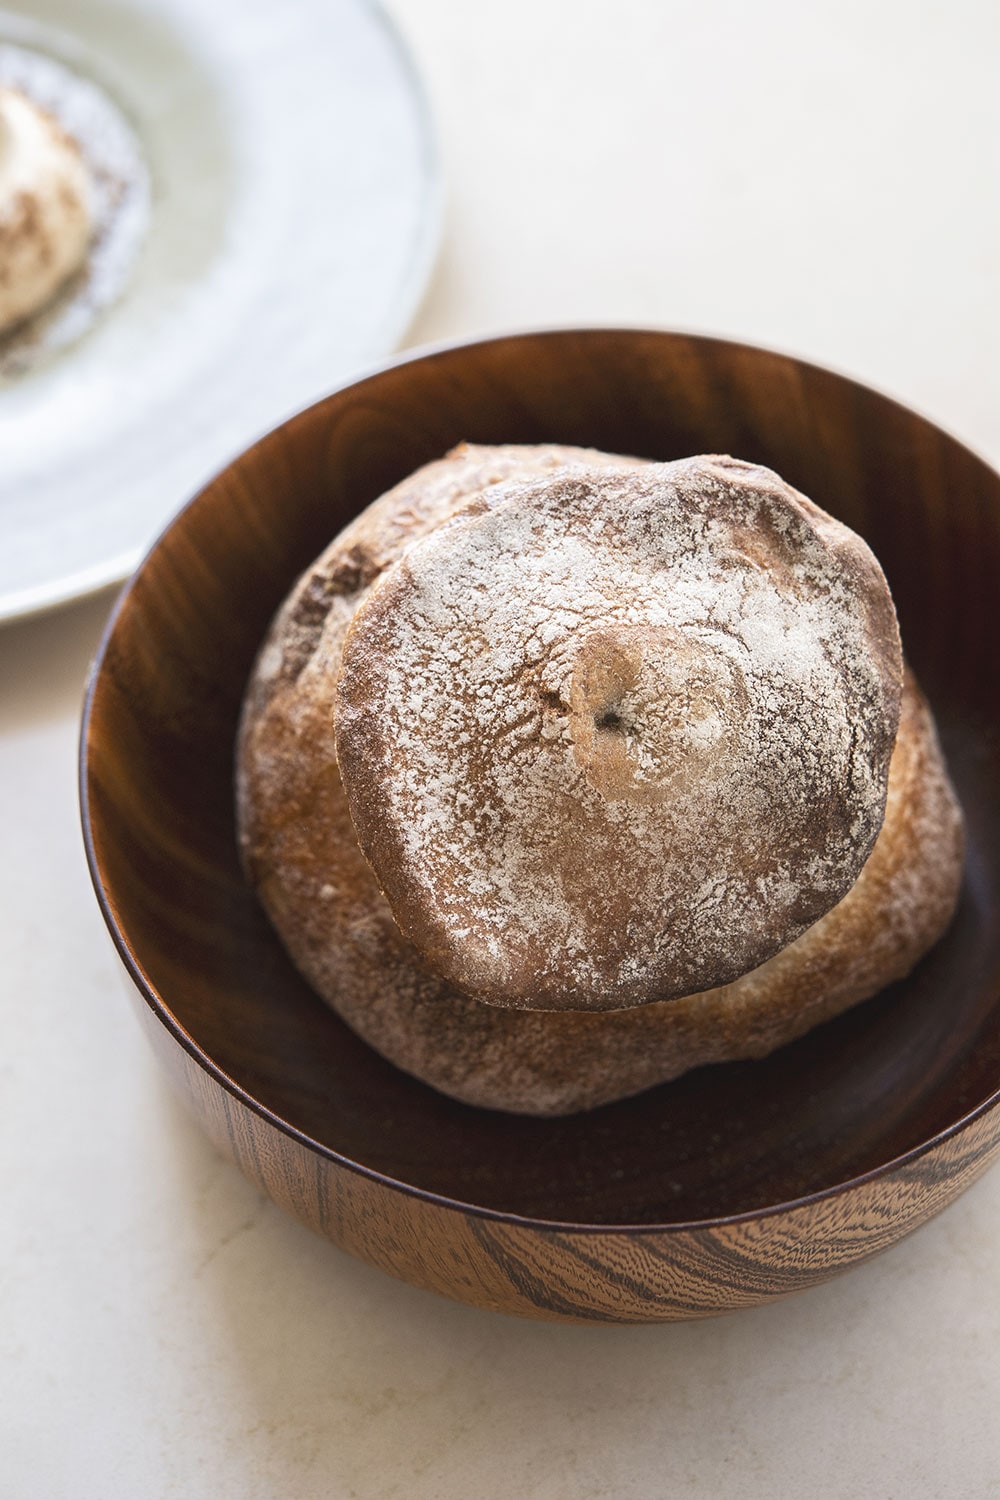 人気ブランジェリー「シニフィアン シニフィエ」で特別に焼いてもらったパン。